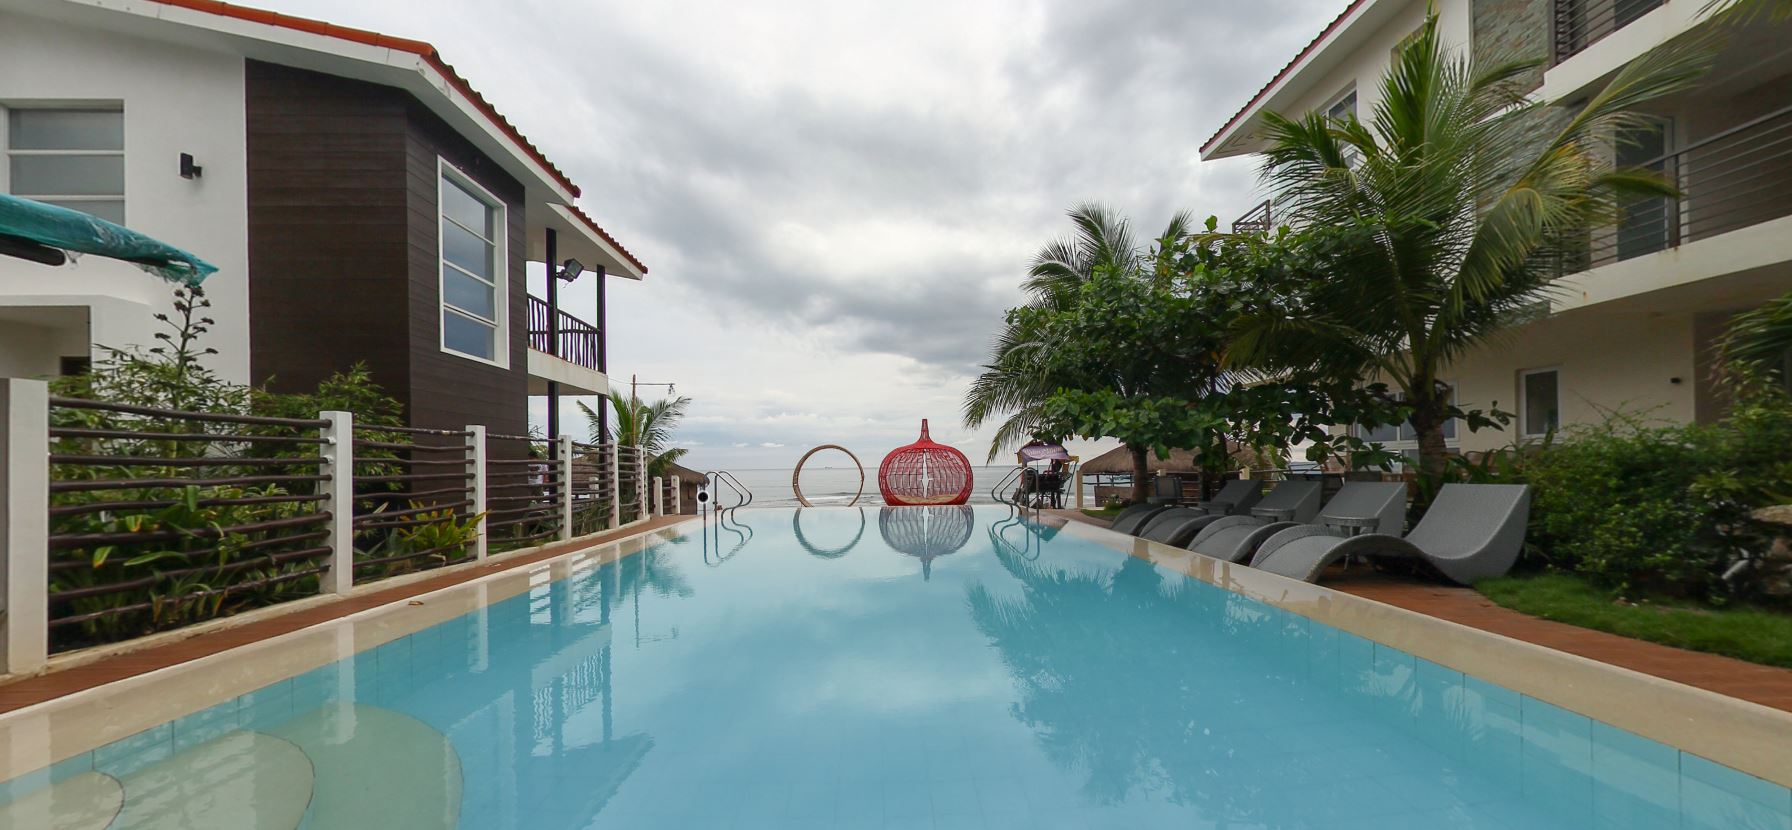 Brisa Marina Beach Resort Panoramictrip